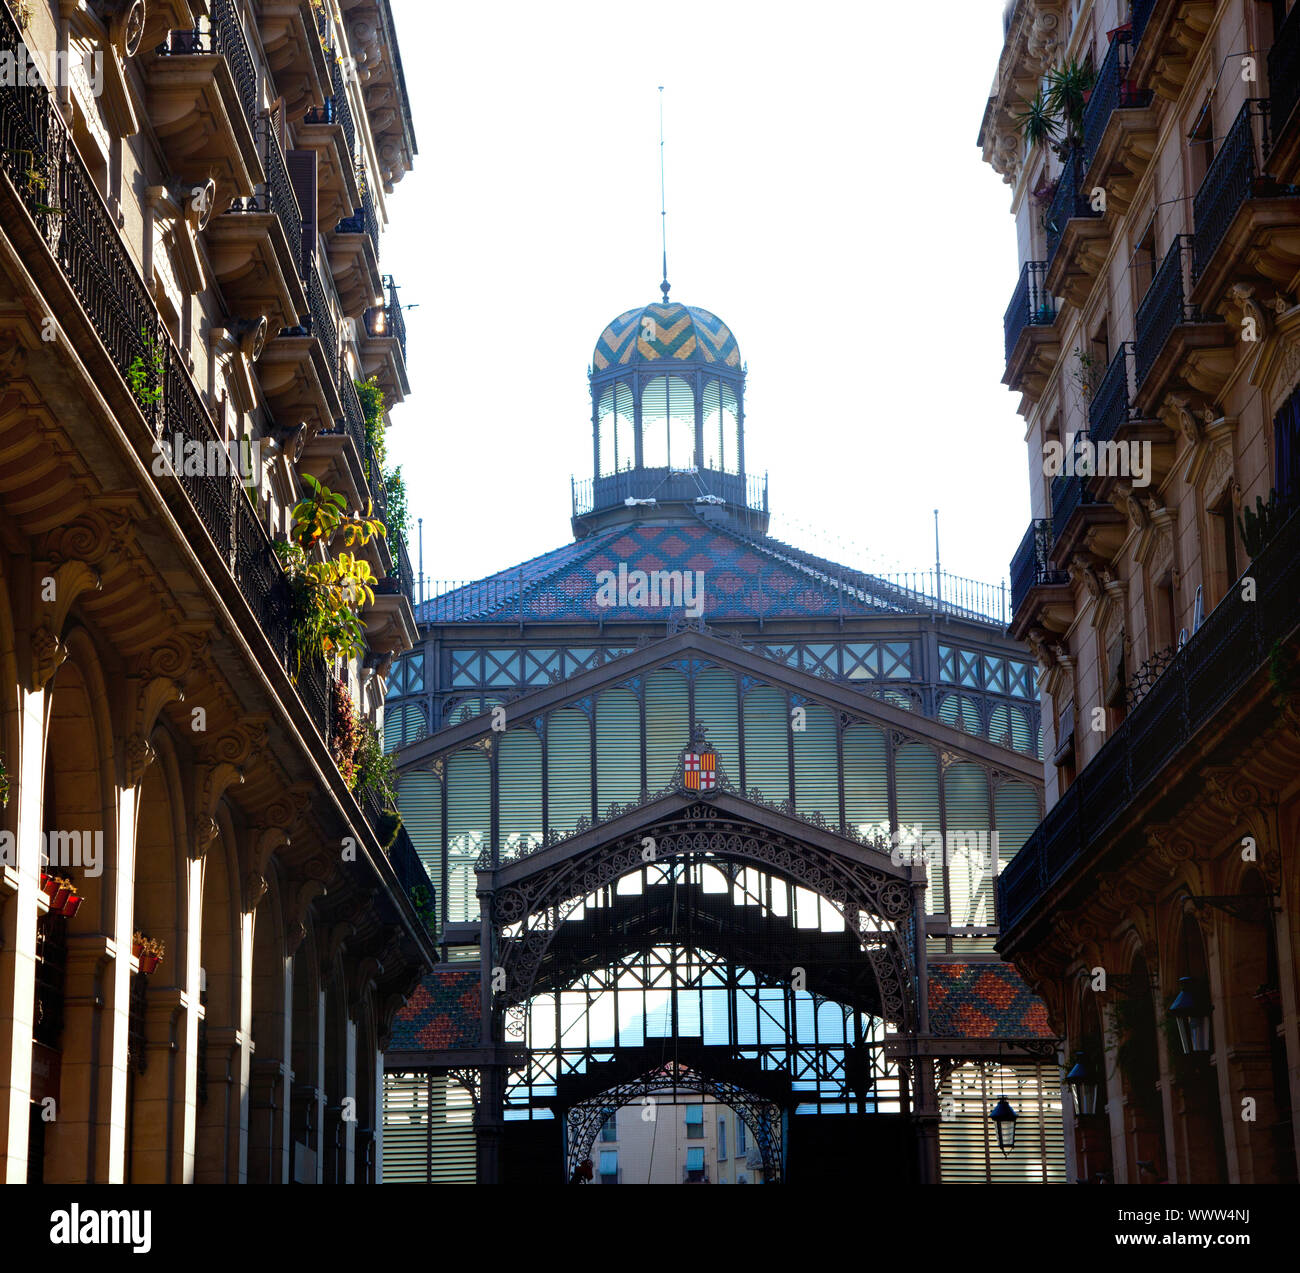 Barcelona Borne market facade in arcade street Stock Photo